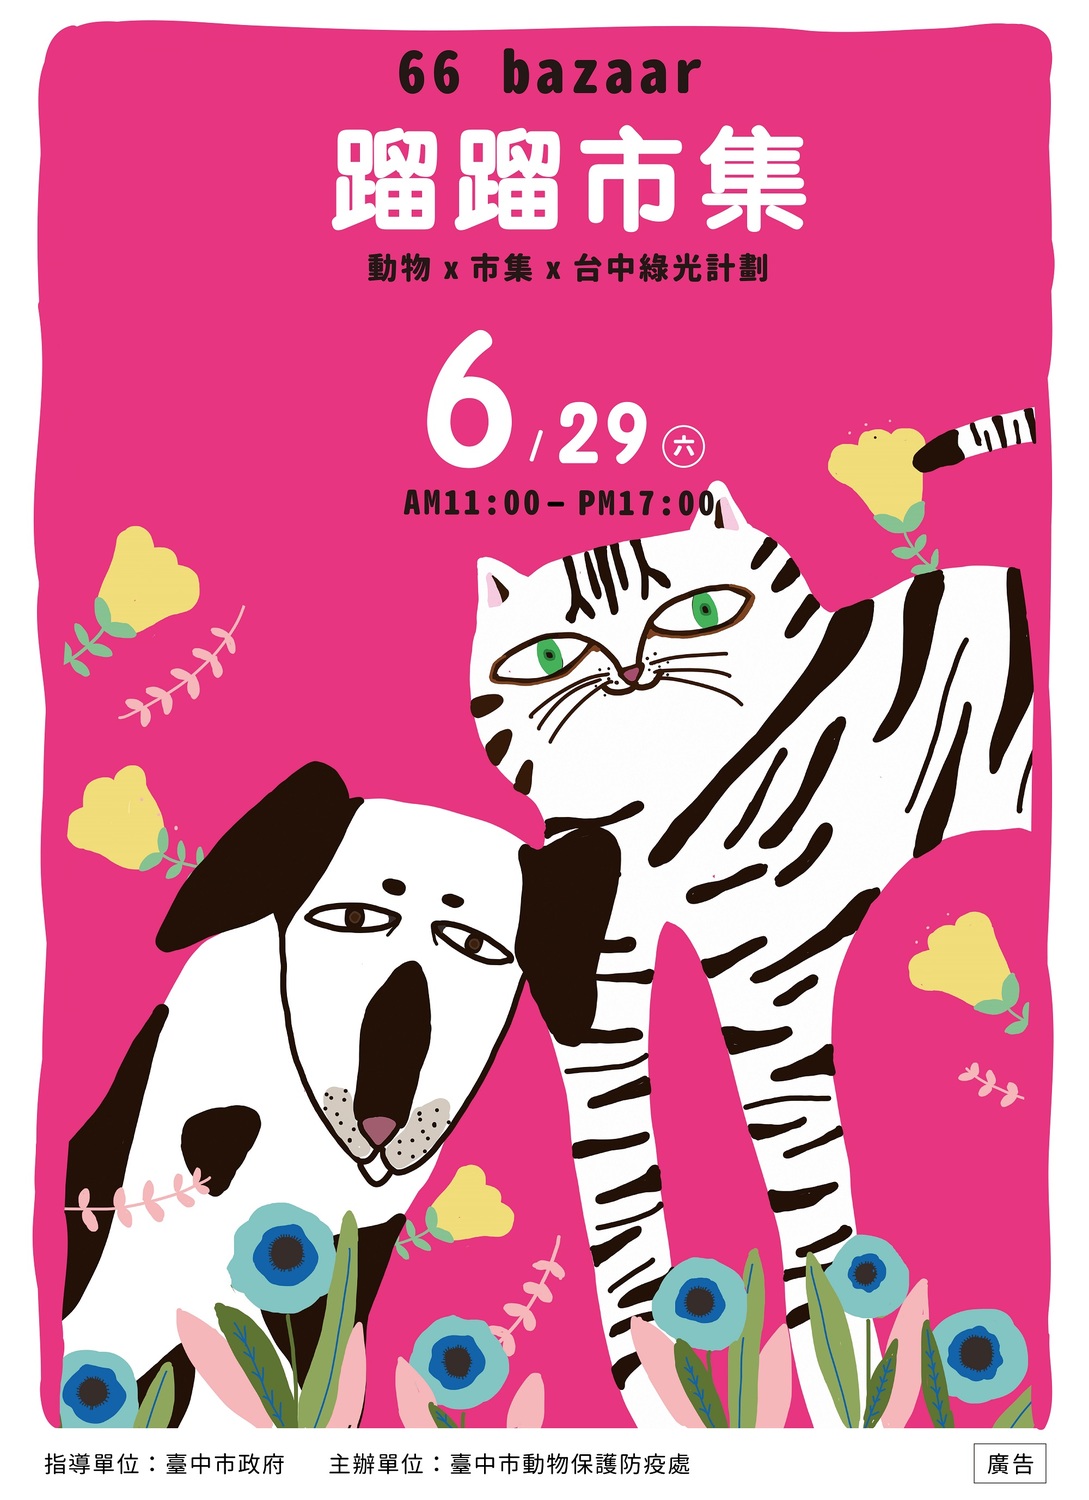 「蹓蹓市集 66 bazaar」文創市集6月29日登場。   圖 : 台中市政府動物處/提供